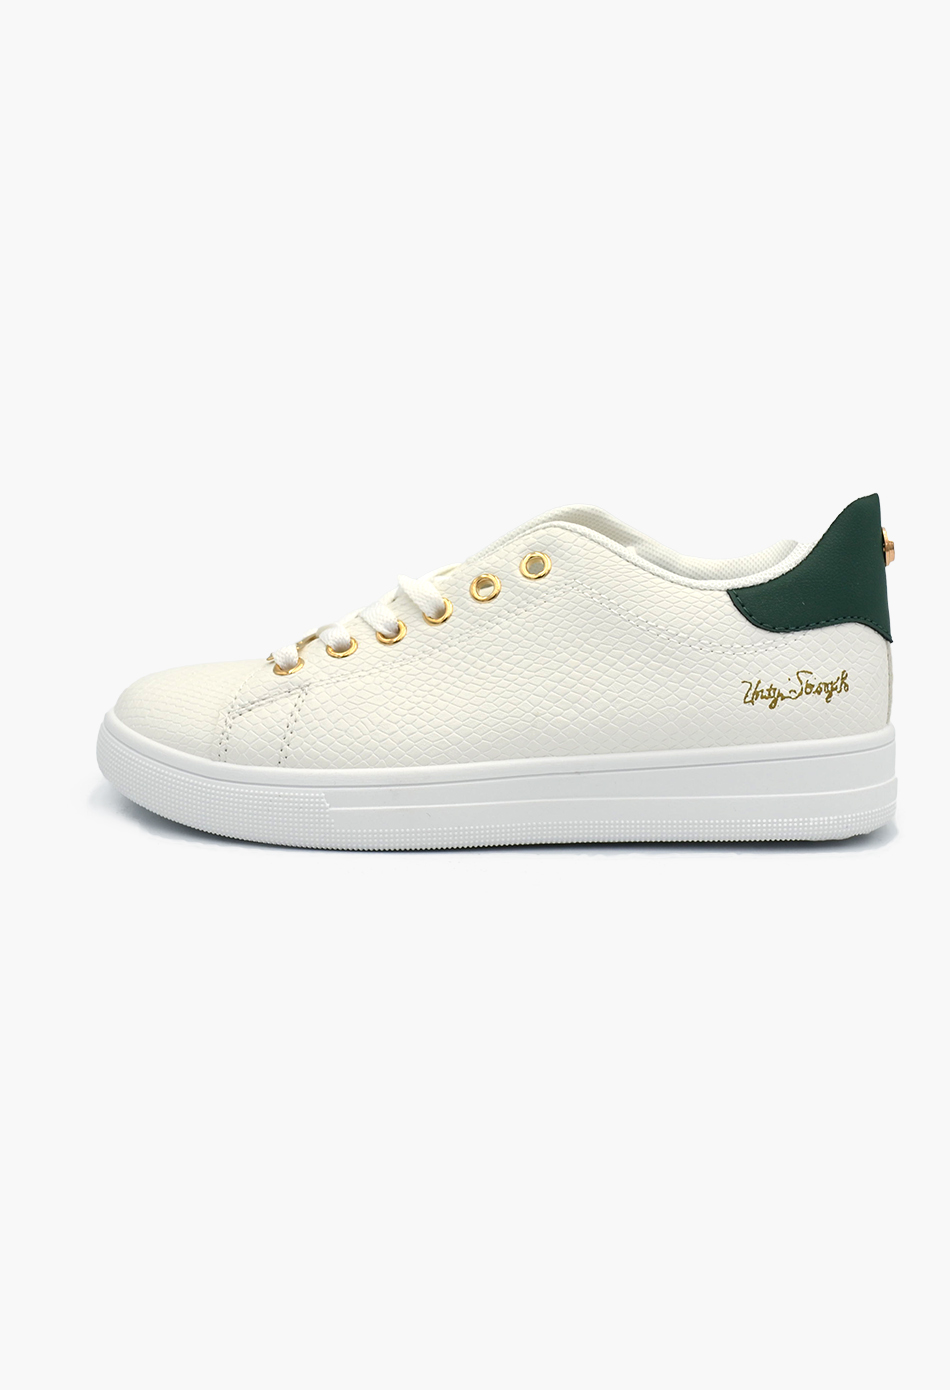 Γυναικεία Flatforms Sneakers Λευκό / OX2528-green Γυναικεία Αθλητικά και Sneakers joya.gr